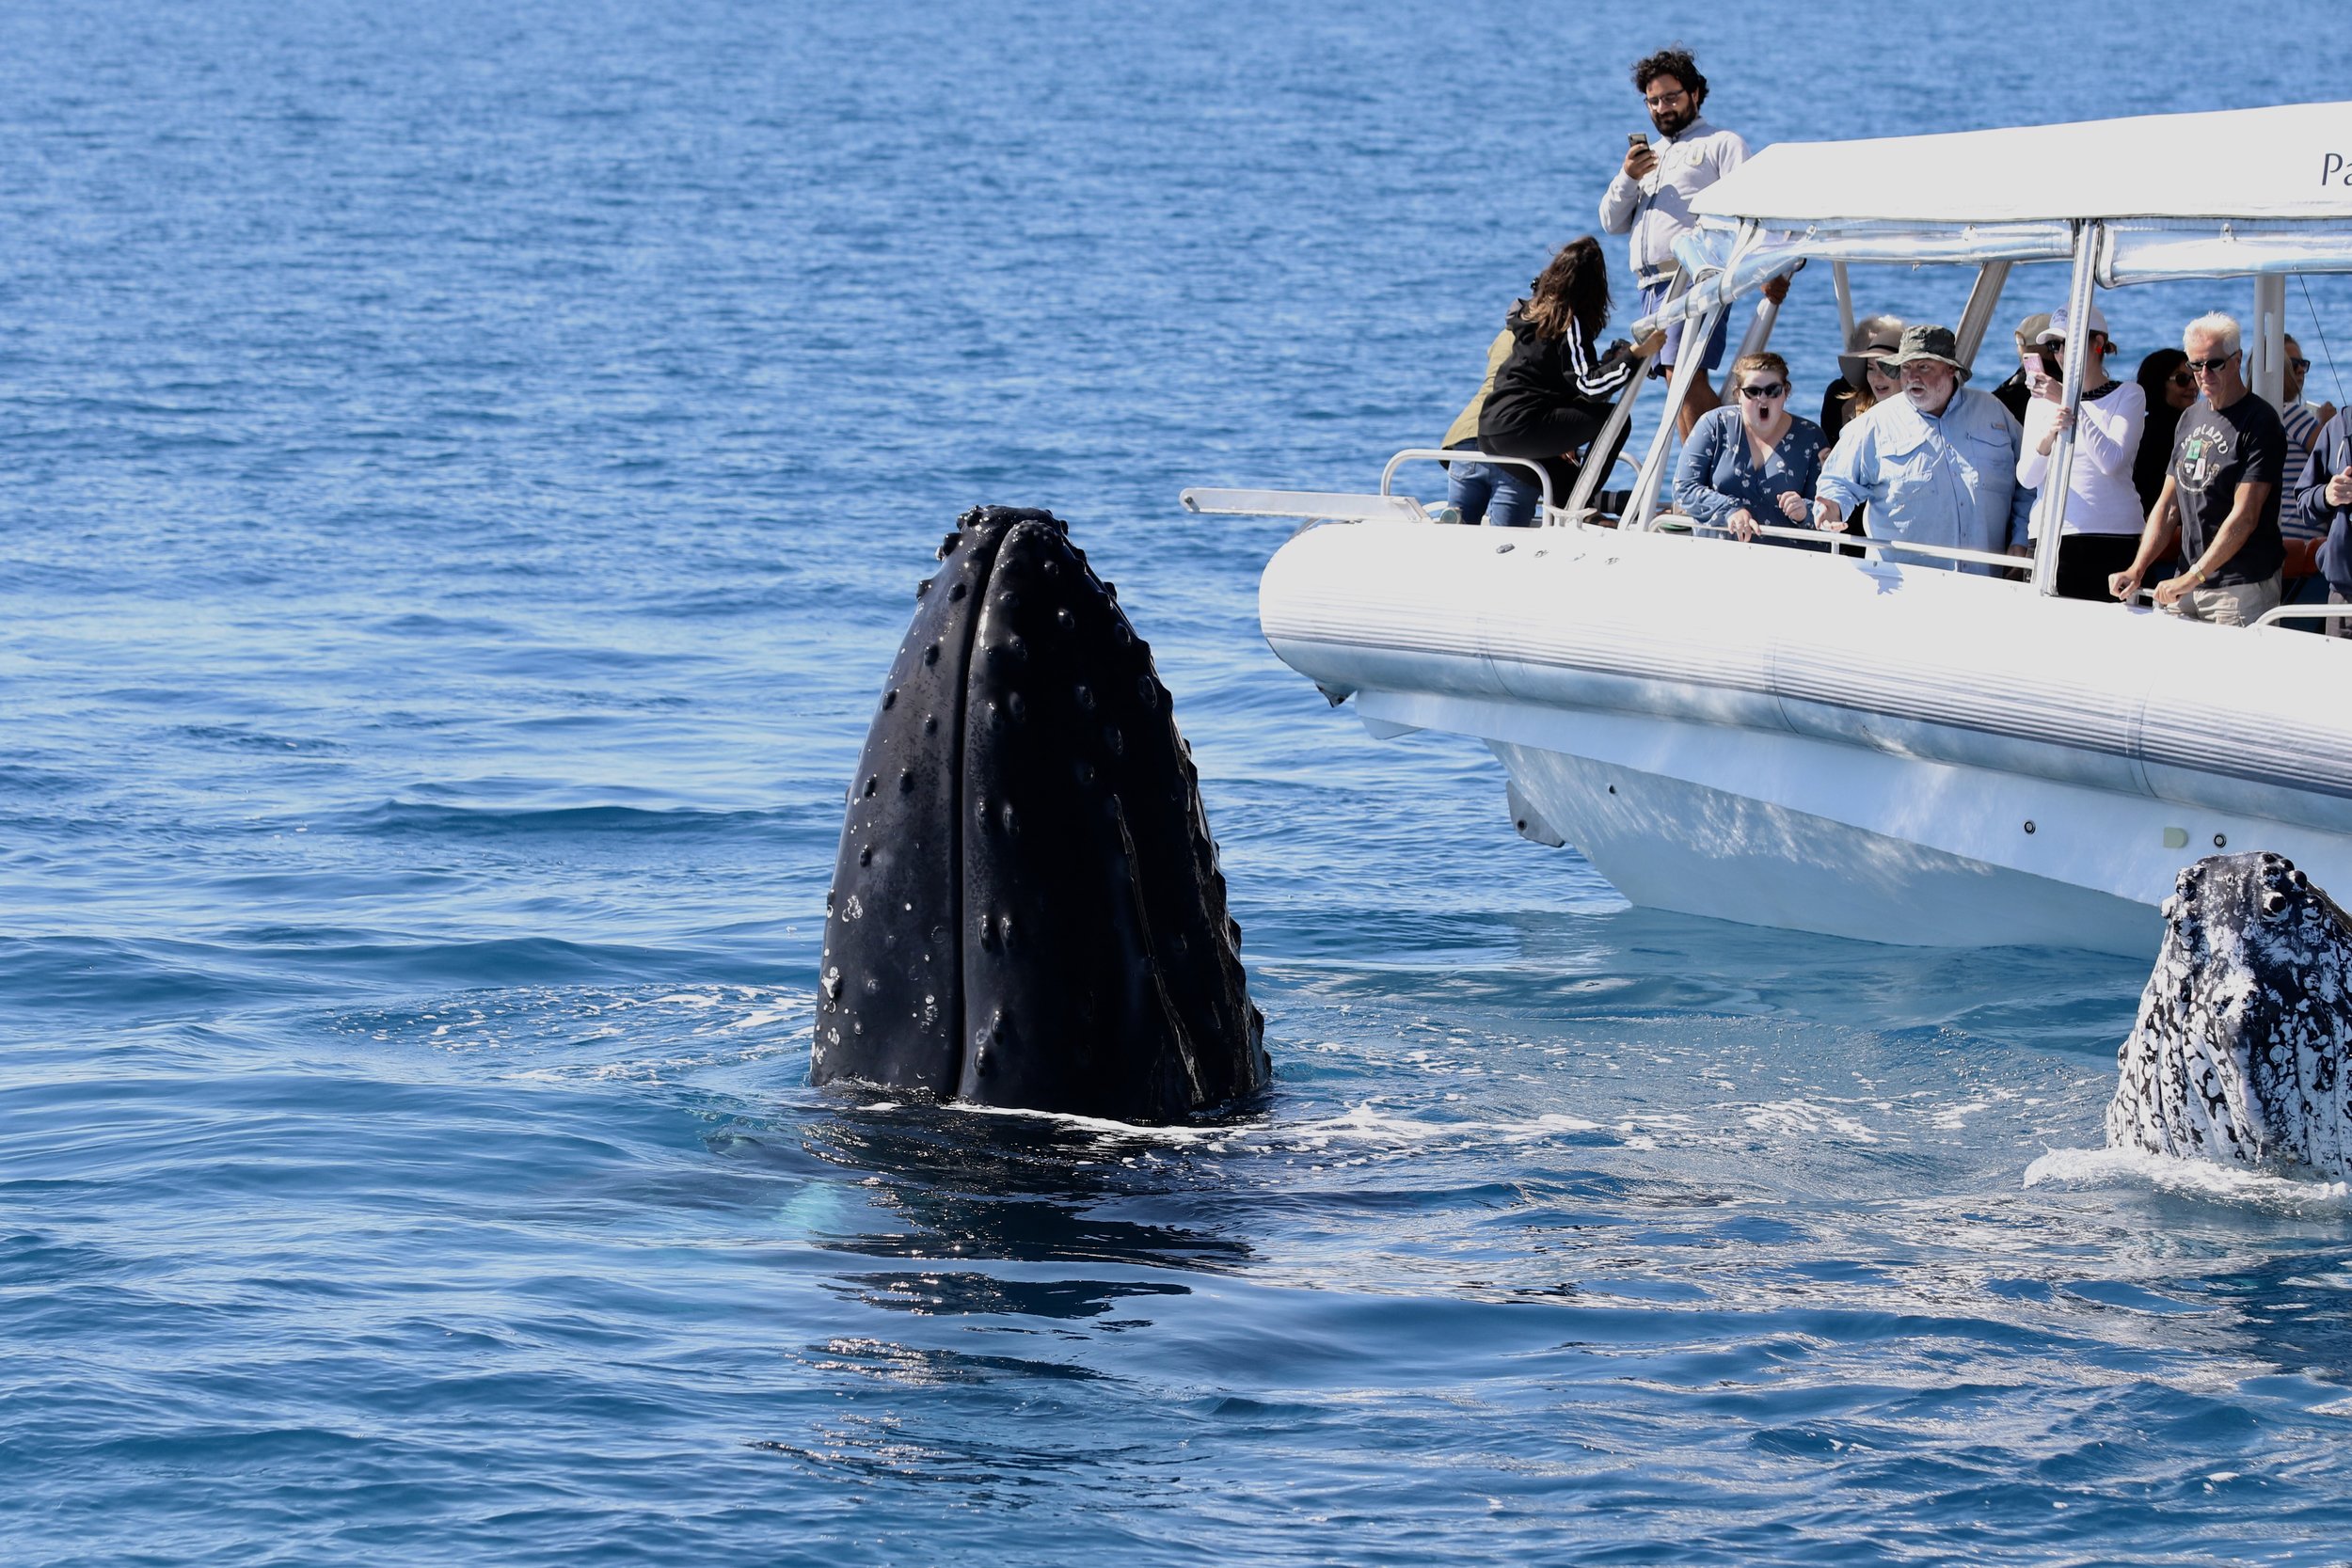 Humpback Whale in Hervey Bay, Australia